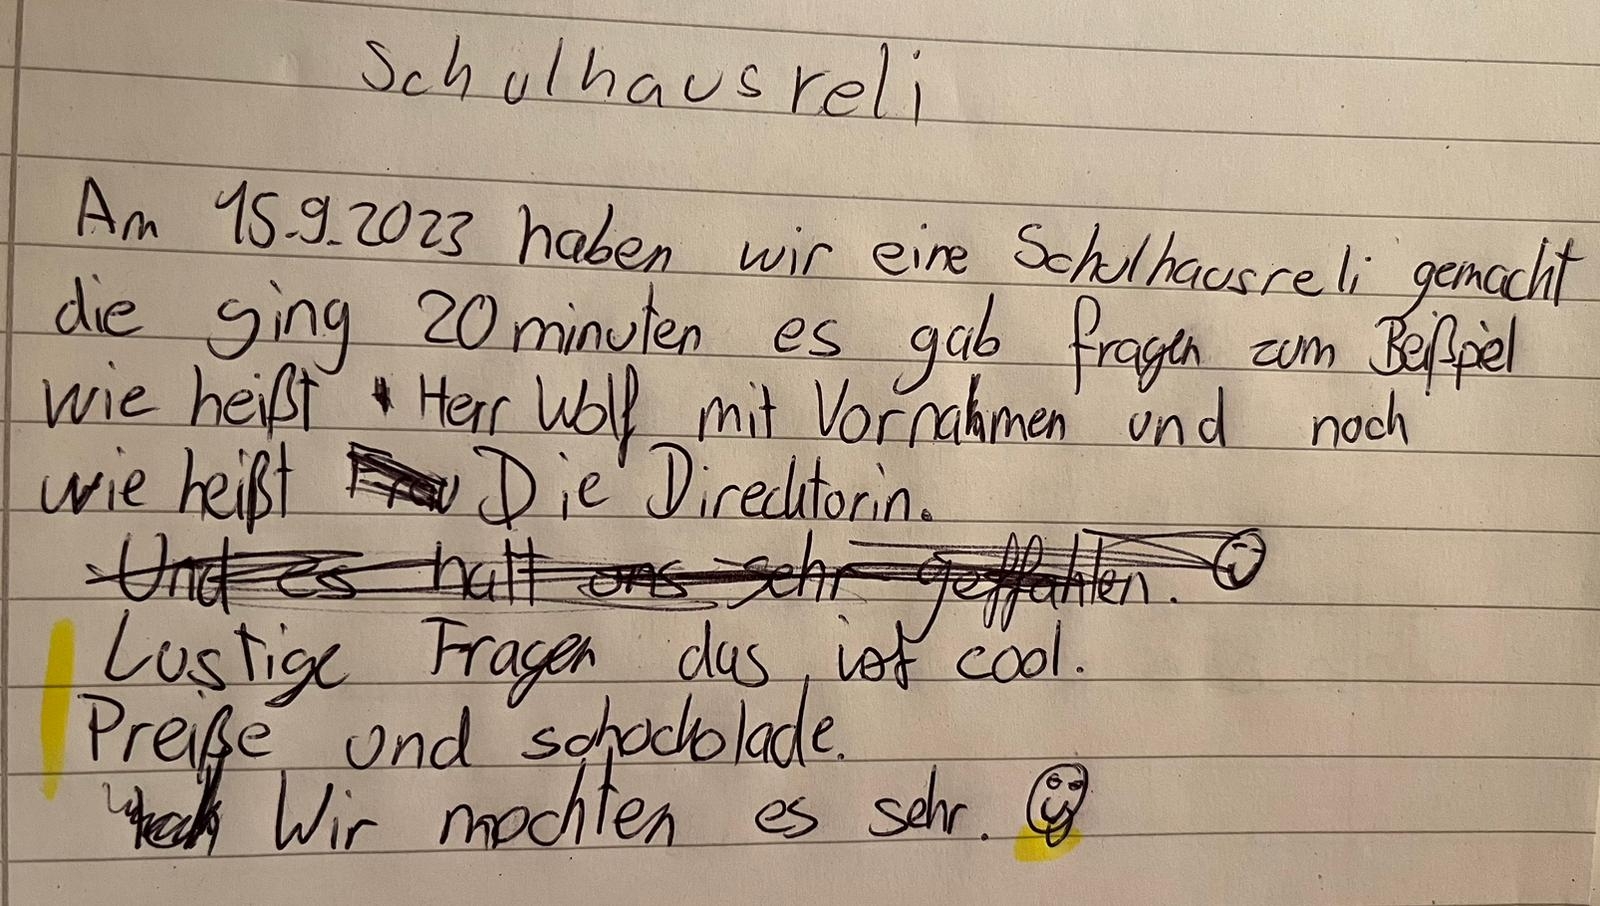 Schulhaus-Rallye